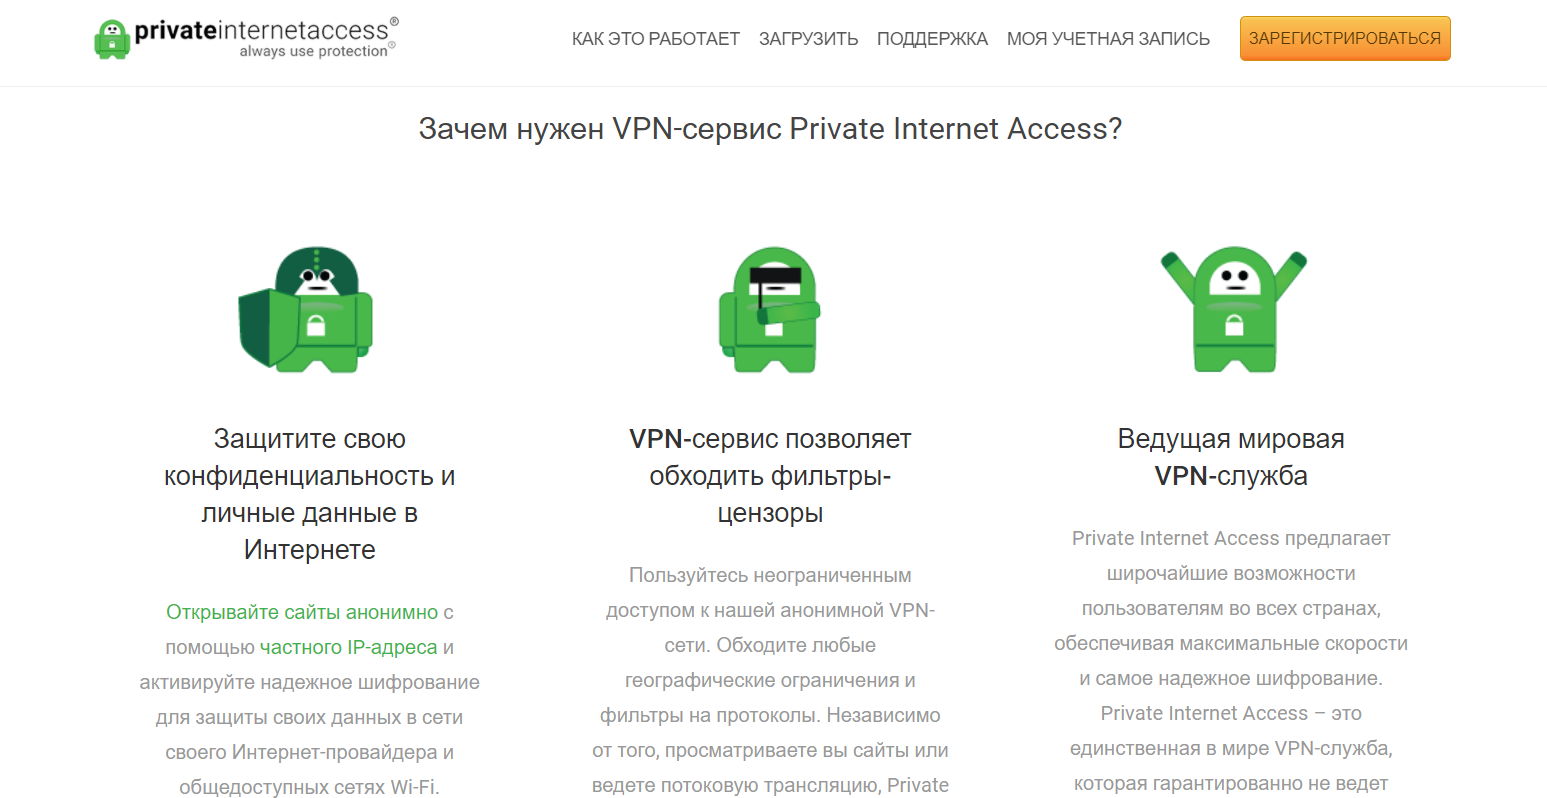 Топ инструментов инструментов для менеджера по продажам в IT: VPN Private Internet Access позволяет обходить фильтры-цензоры 